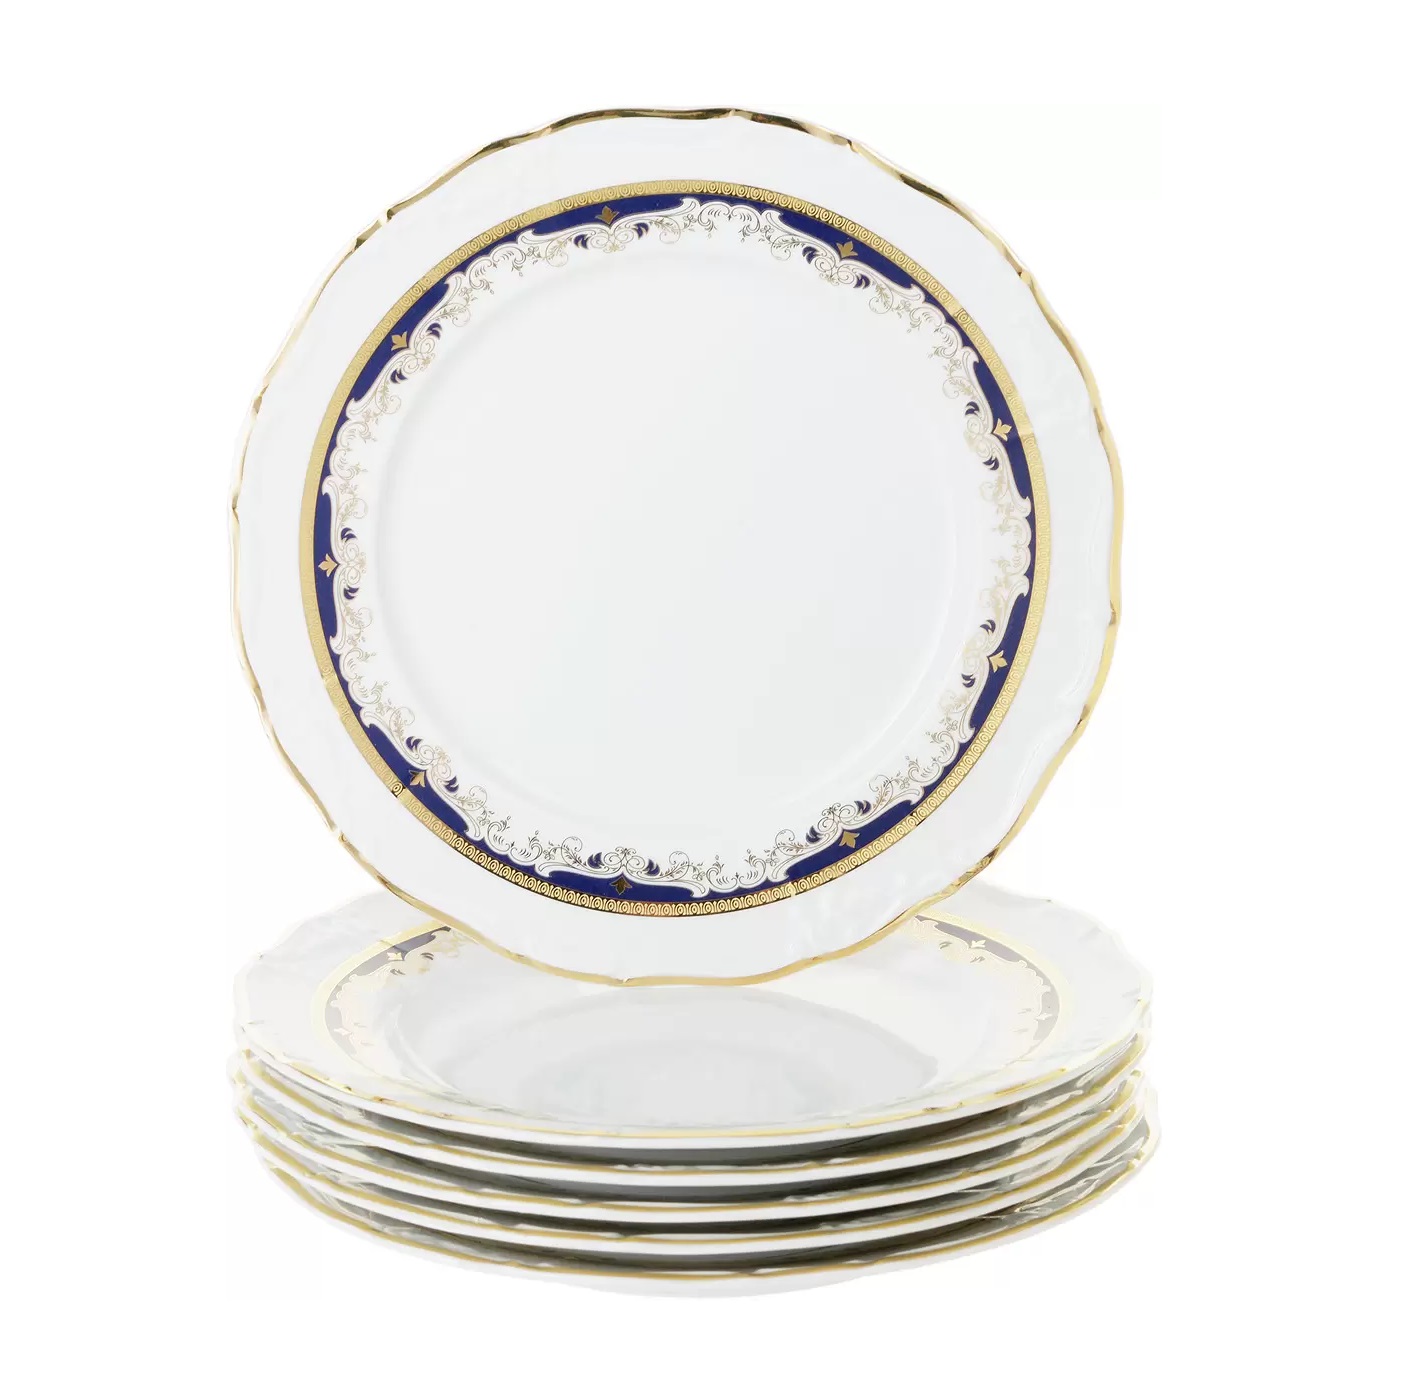 набор десертных тарелок thun 1794 деколь 17 см Набор тарелок мелких Thun Мария Луиза синий декор 25 см 6 шт.